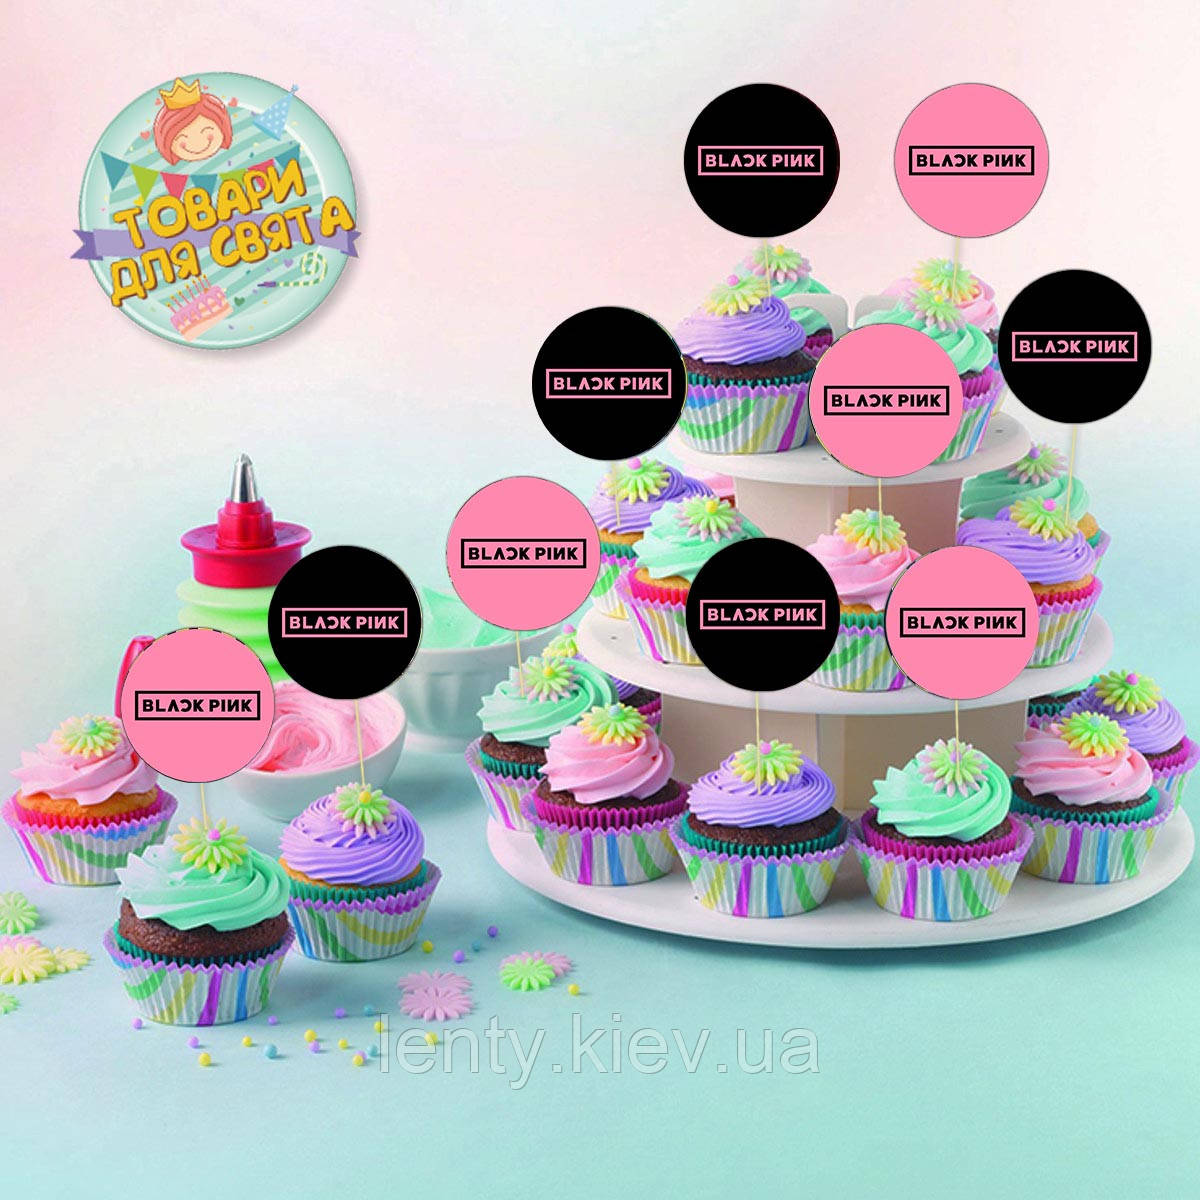 Круглі топери  "Блек Пинк / Black Pink" k-pop к-поп" (10 шт./пач.) для кексів, мафінів, капкейків